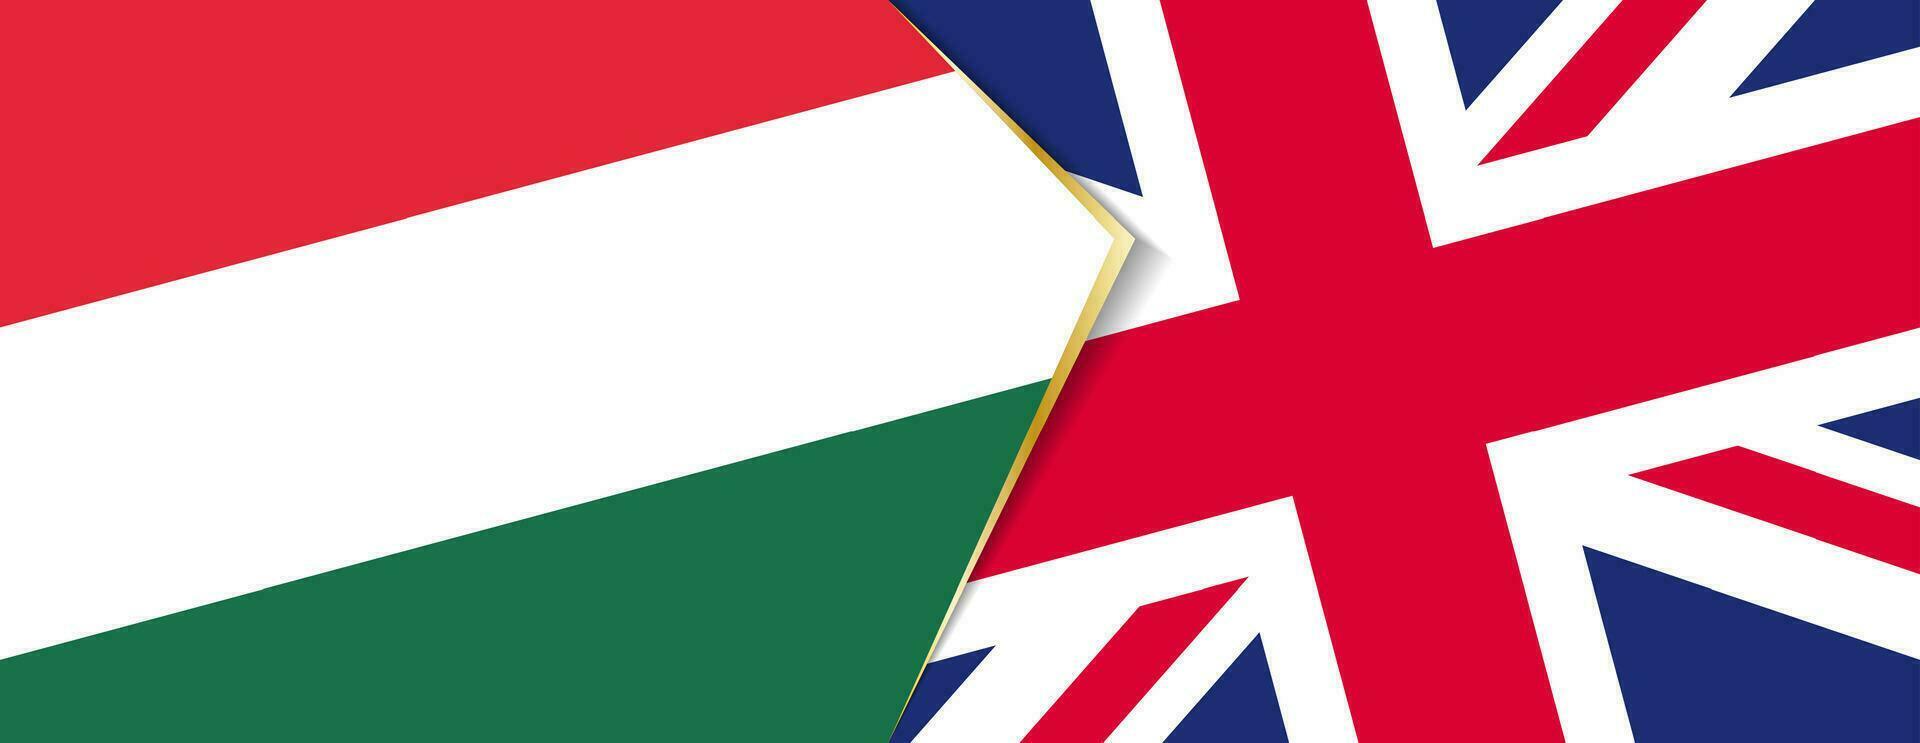 Hungría y unido Reino banderas, dos vector banderas